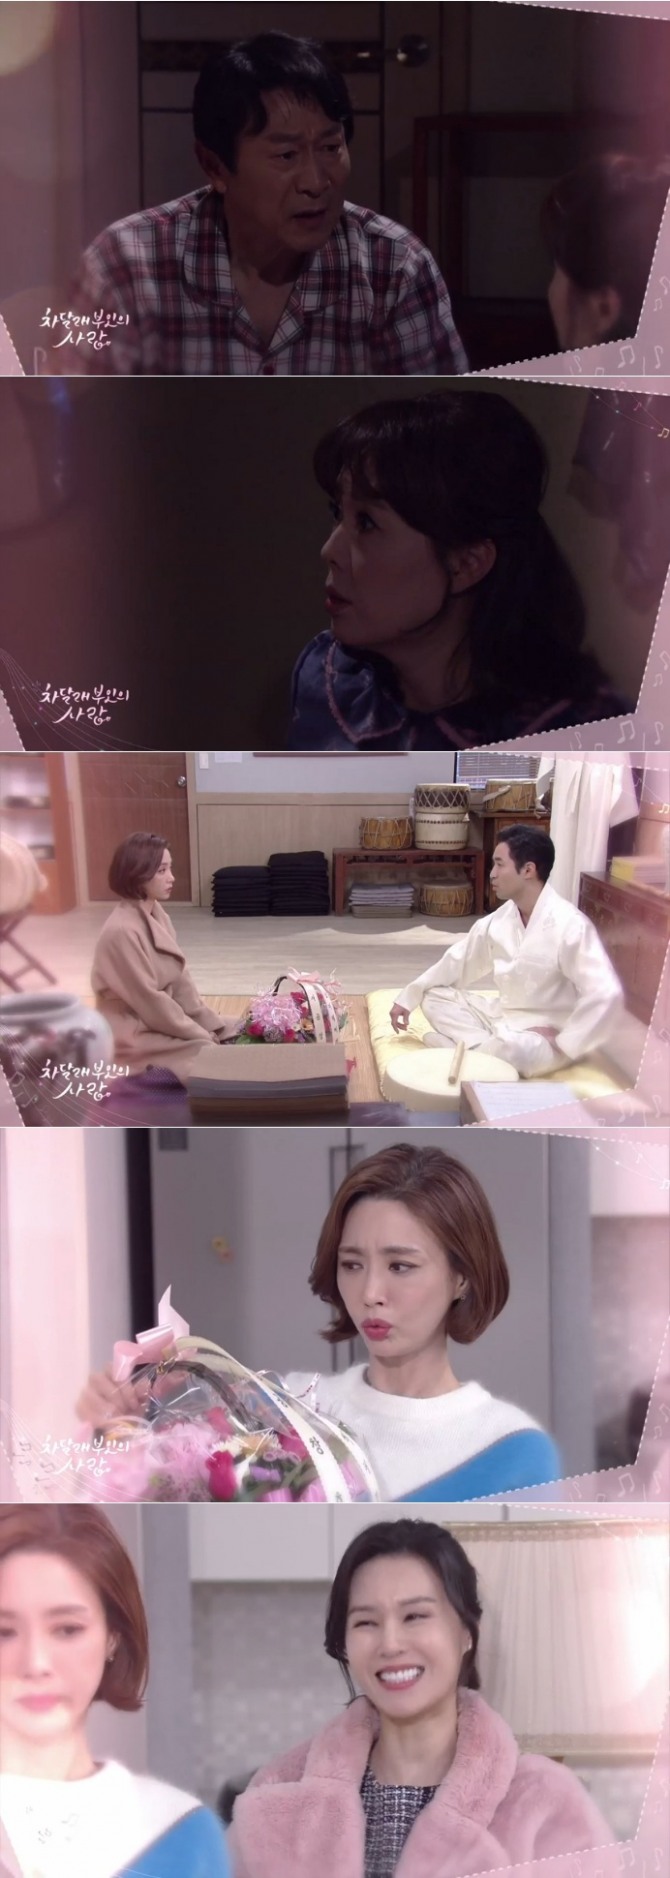 10일 오전 방송되는 KBS2TV 일일드라마 '차달래 부인의 사랑' 71회에서는 치매에 걸린 복남(김응수)이 아내인 차진옥(하희라)에게 엄마라고 부르는 반전이 그려진다, 사진=KBS 영상 캡처